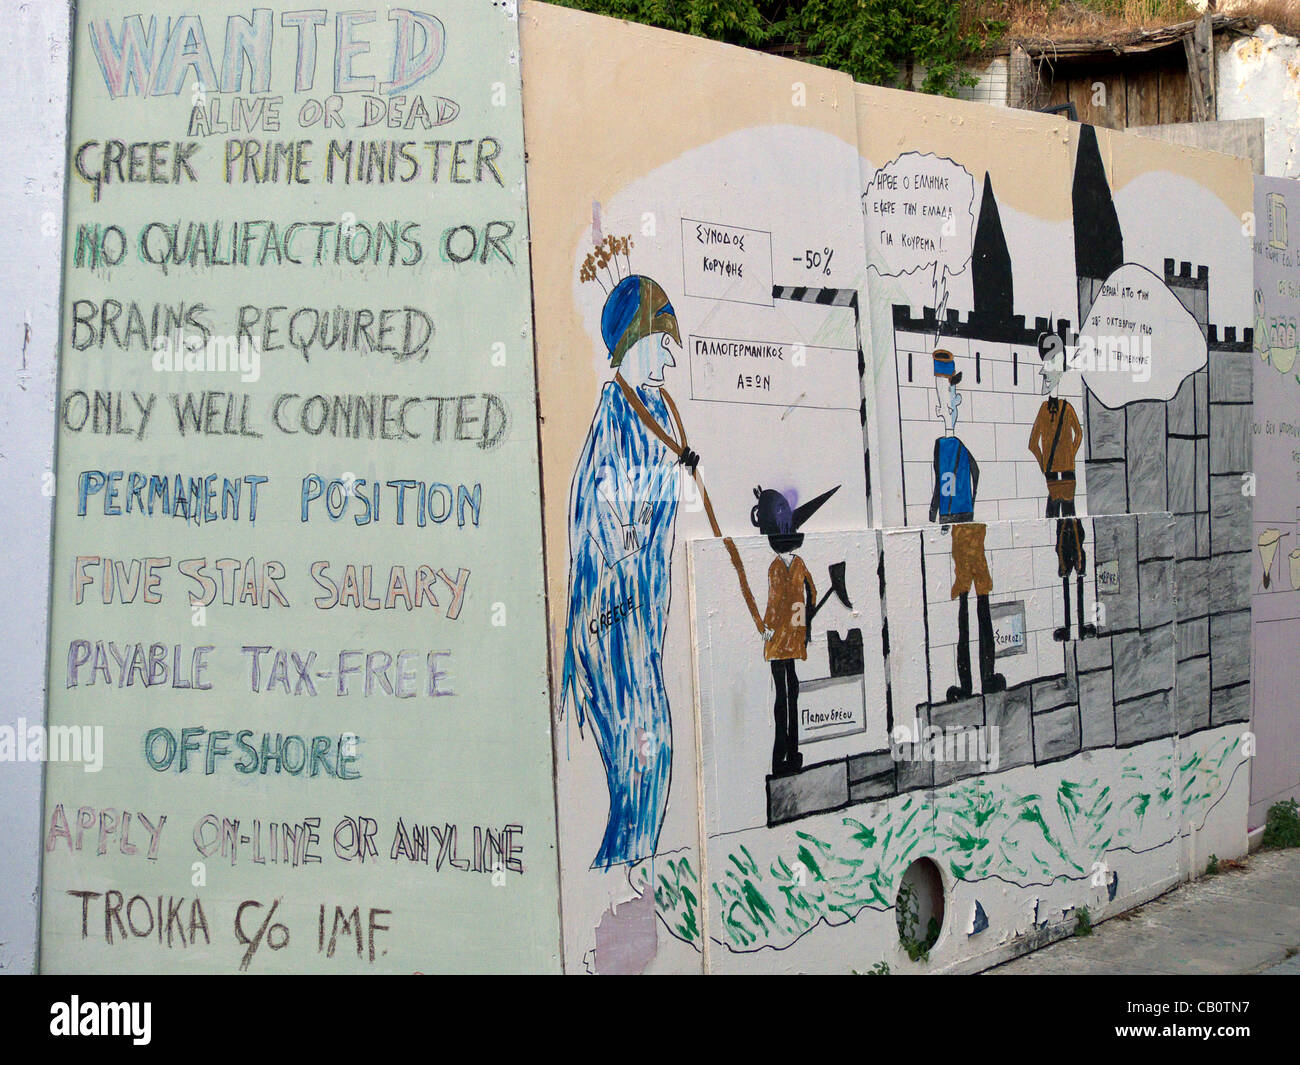 16 mai 2012 - Grèce Athènes Graffiti politique dans le centre de la zone touristique de Plaka d'Athènes sous la forme d'un avis de recherche pour le nouveau Premier ministre grec Banque D'Images